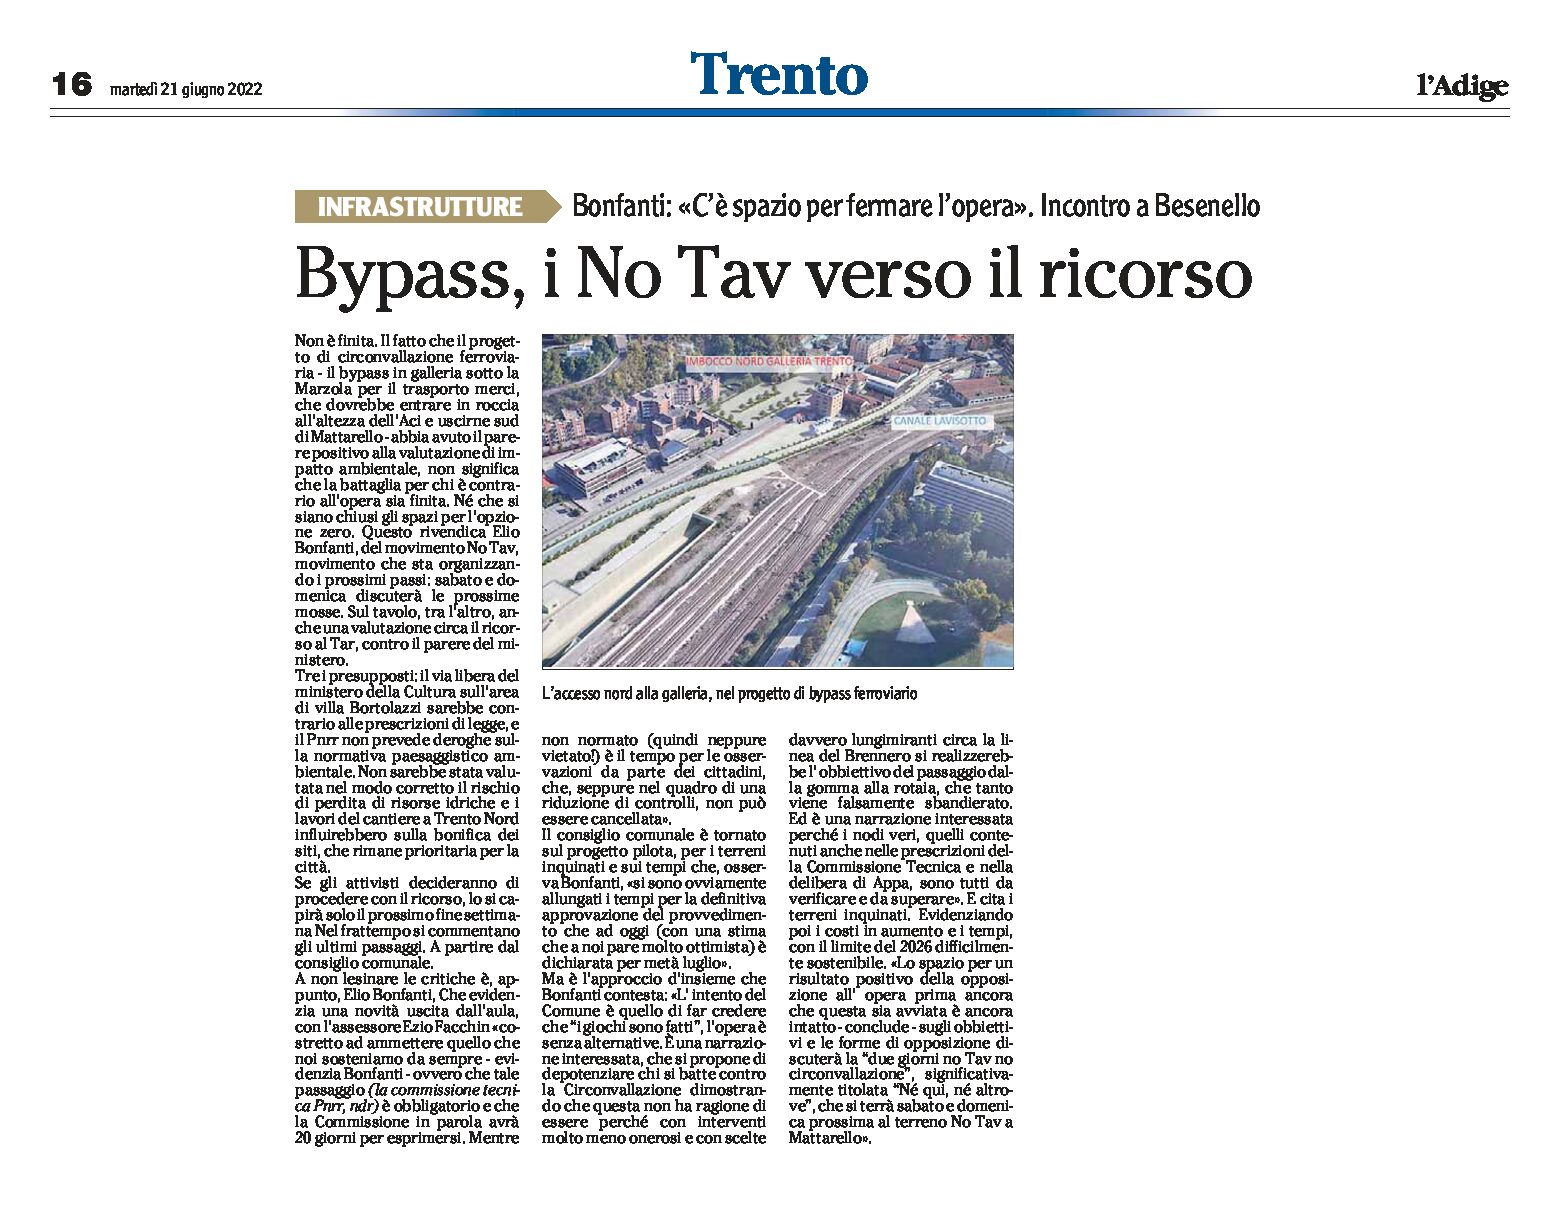 Trento, bypass: i No Tav verso il ricorso